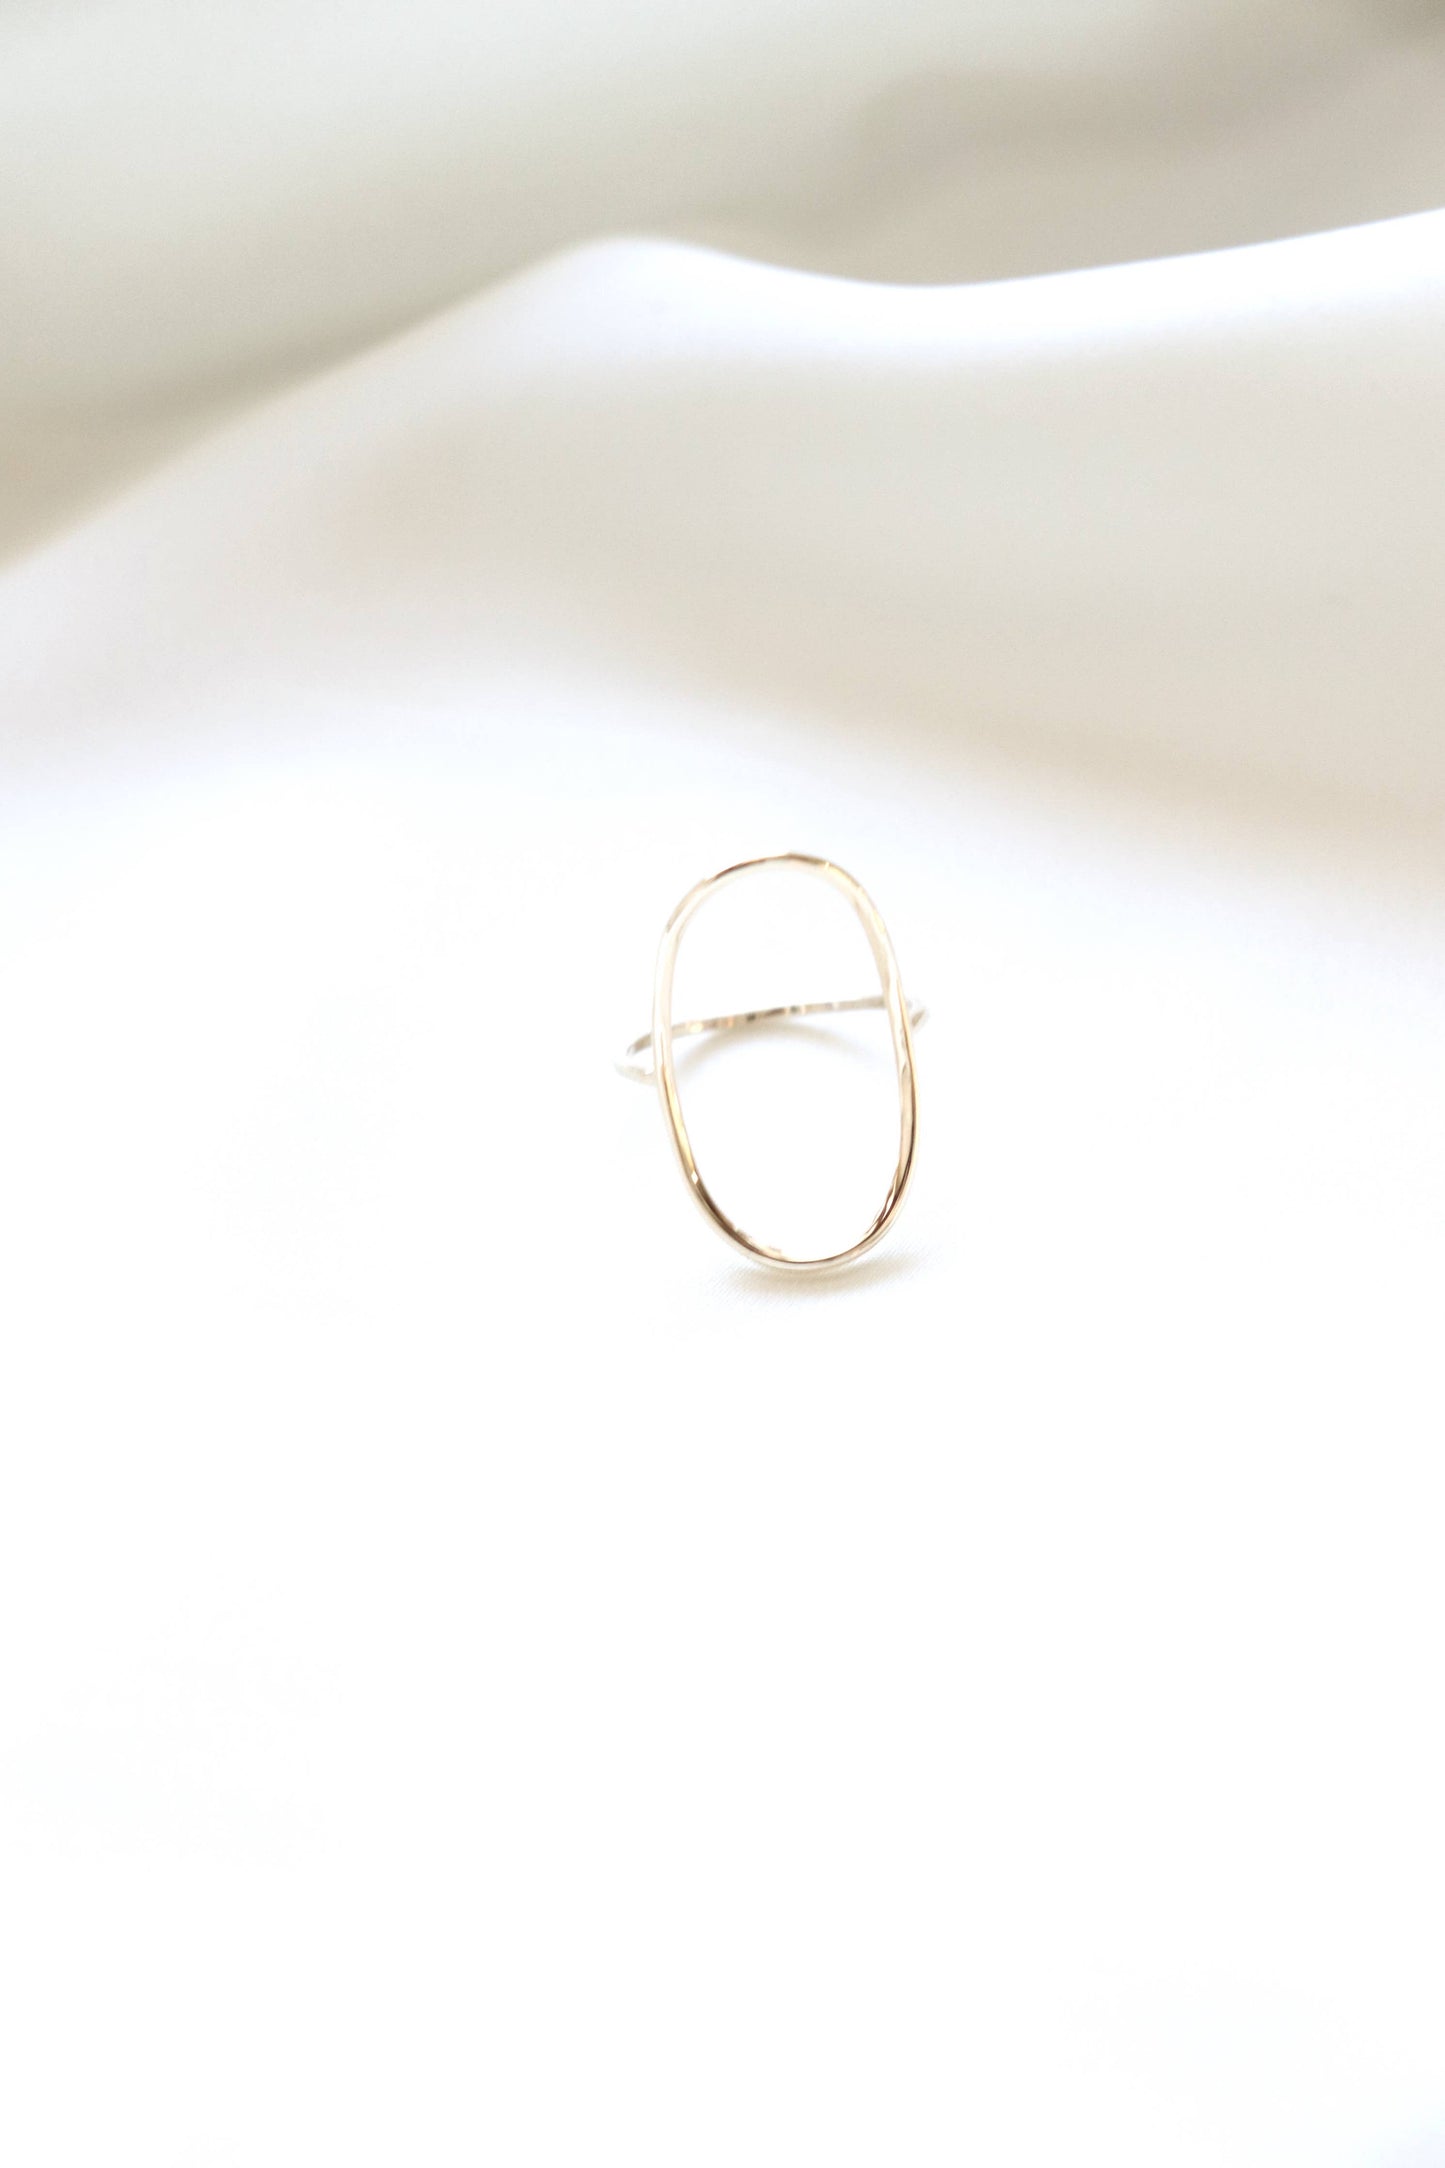 Oakley ring